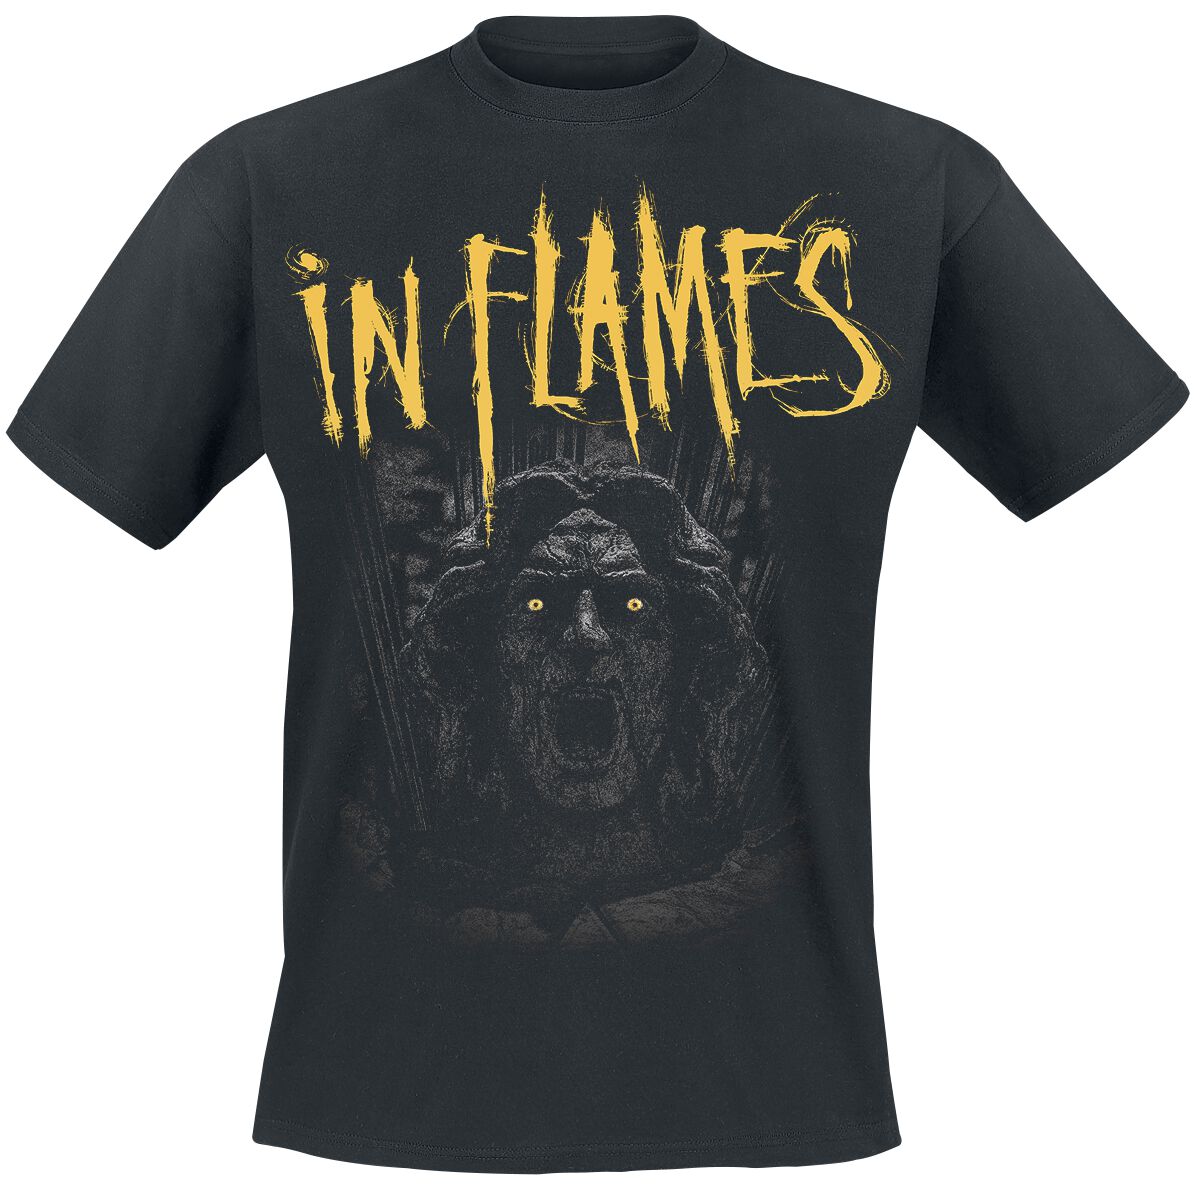 In Flames T-Shirt - Clayman We Trust - S bis XXL - für Männer - Größe M - schwarz  - EMP exklusives Merchandise!